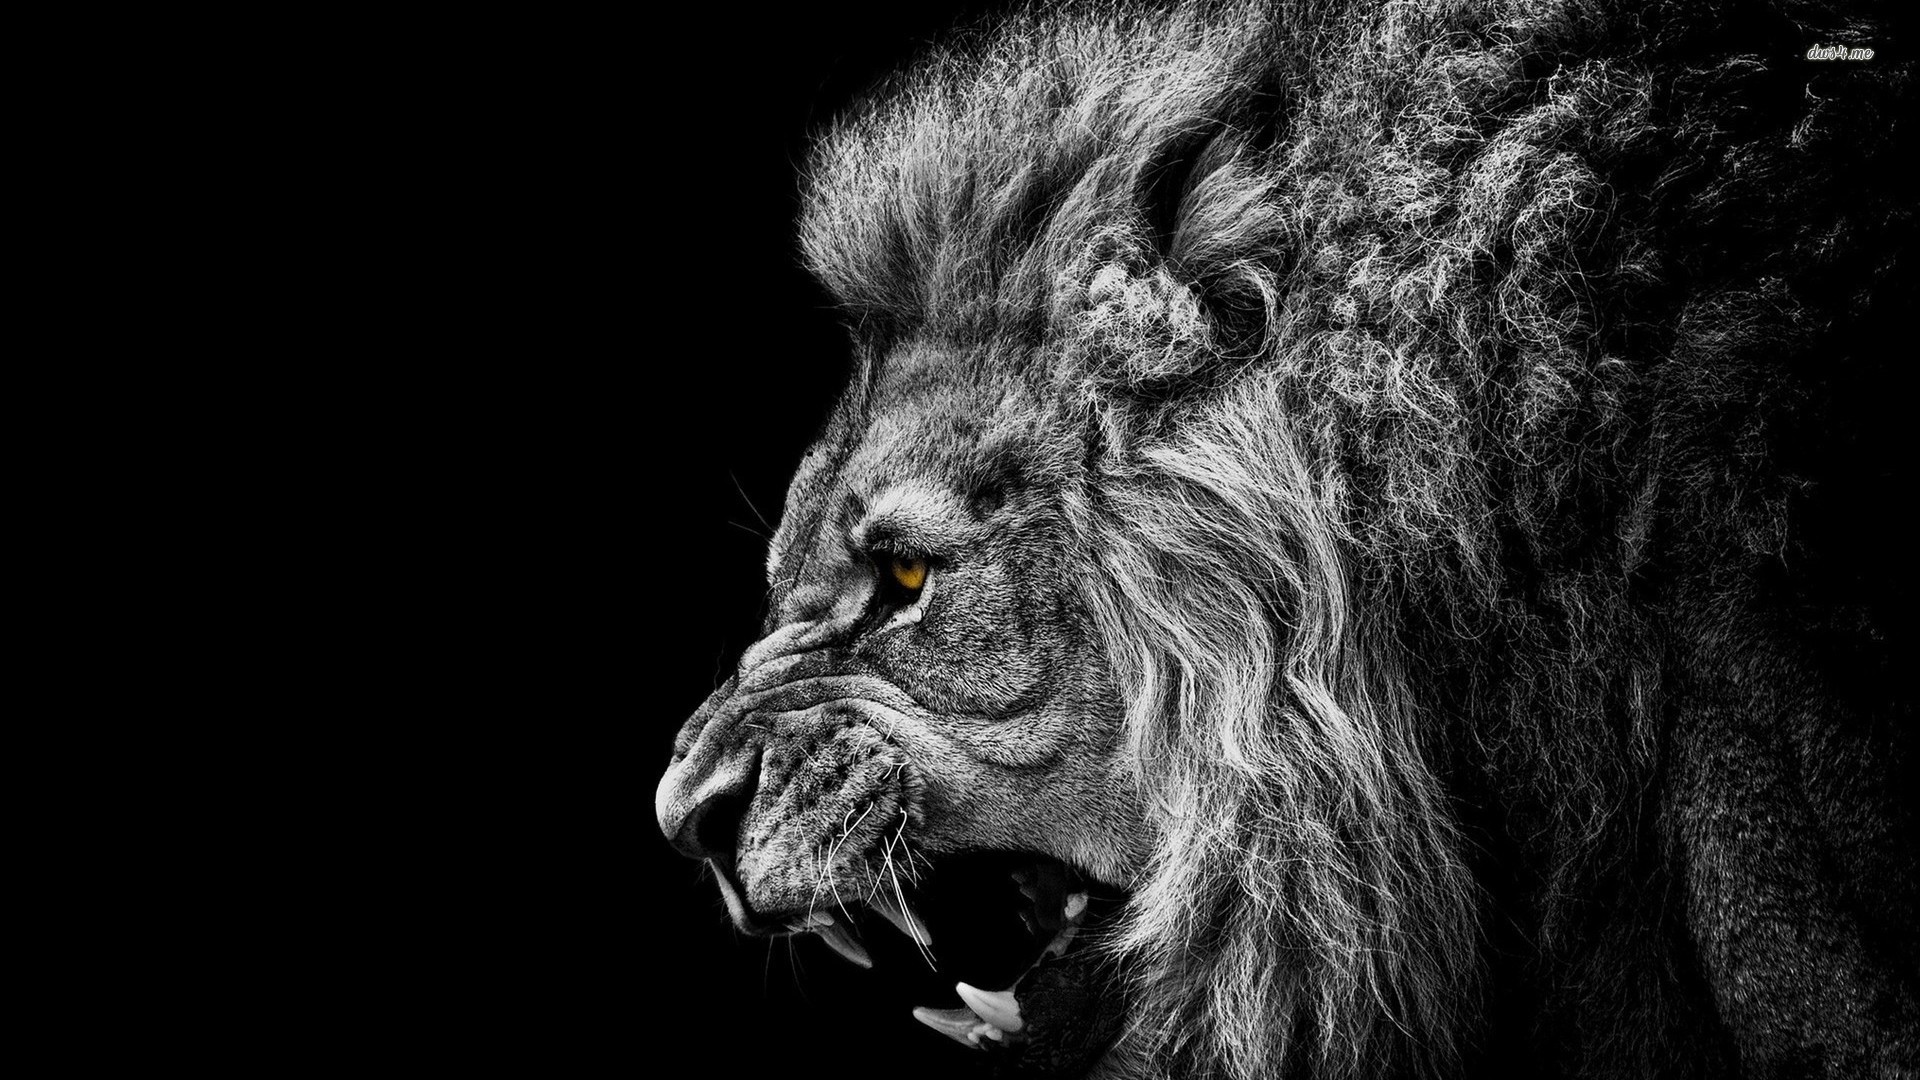 Roaring Lion Wallpaper Animal